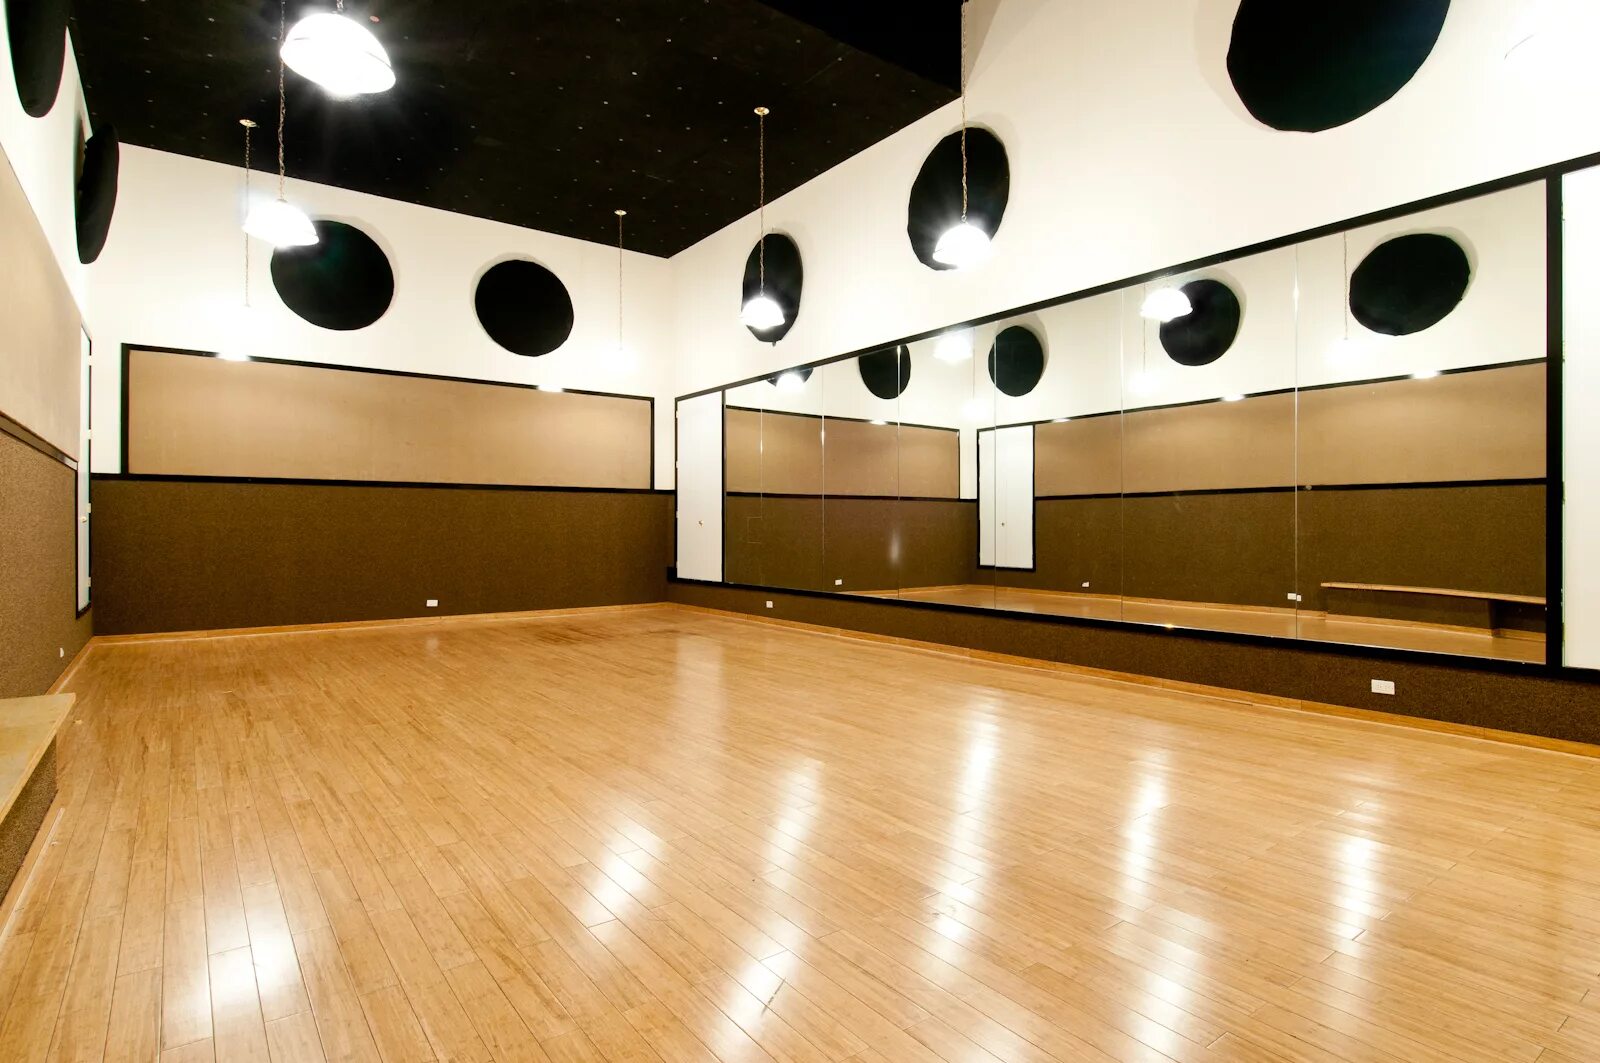 В квадратном зале для танцев. Танцевальный зал. Зал хореографии. Интерьер танцевального зала. Зал для танцев.